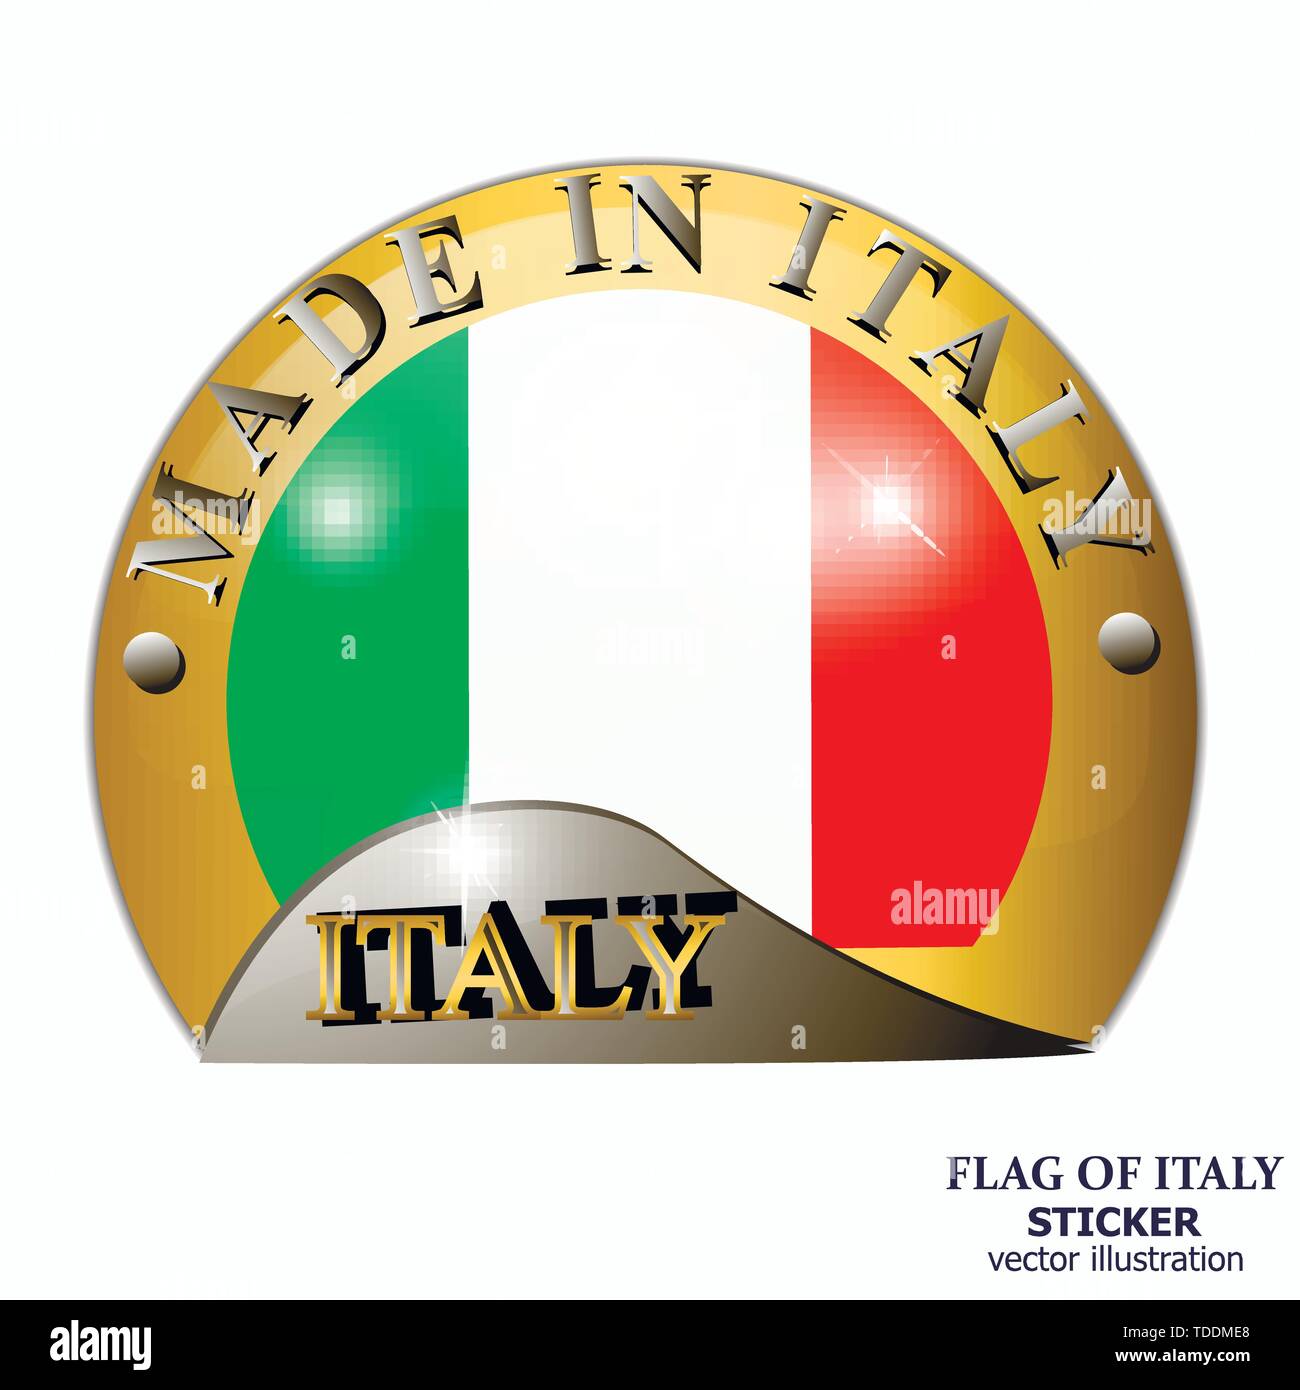 https://c8.alamy.com/compde/tddme8/in-italien-aufkleber-gemacht-helle-aufkleber-verkauf-mit-italienischer-flagge-gerne-italien-tag-drucken-aufkleber-mit-flagge-von-italien-abbildung-tddme8.jpg